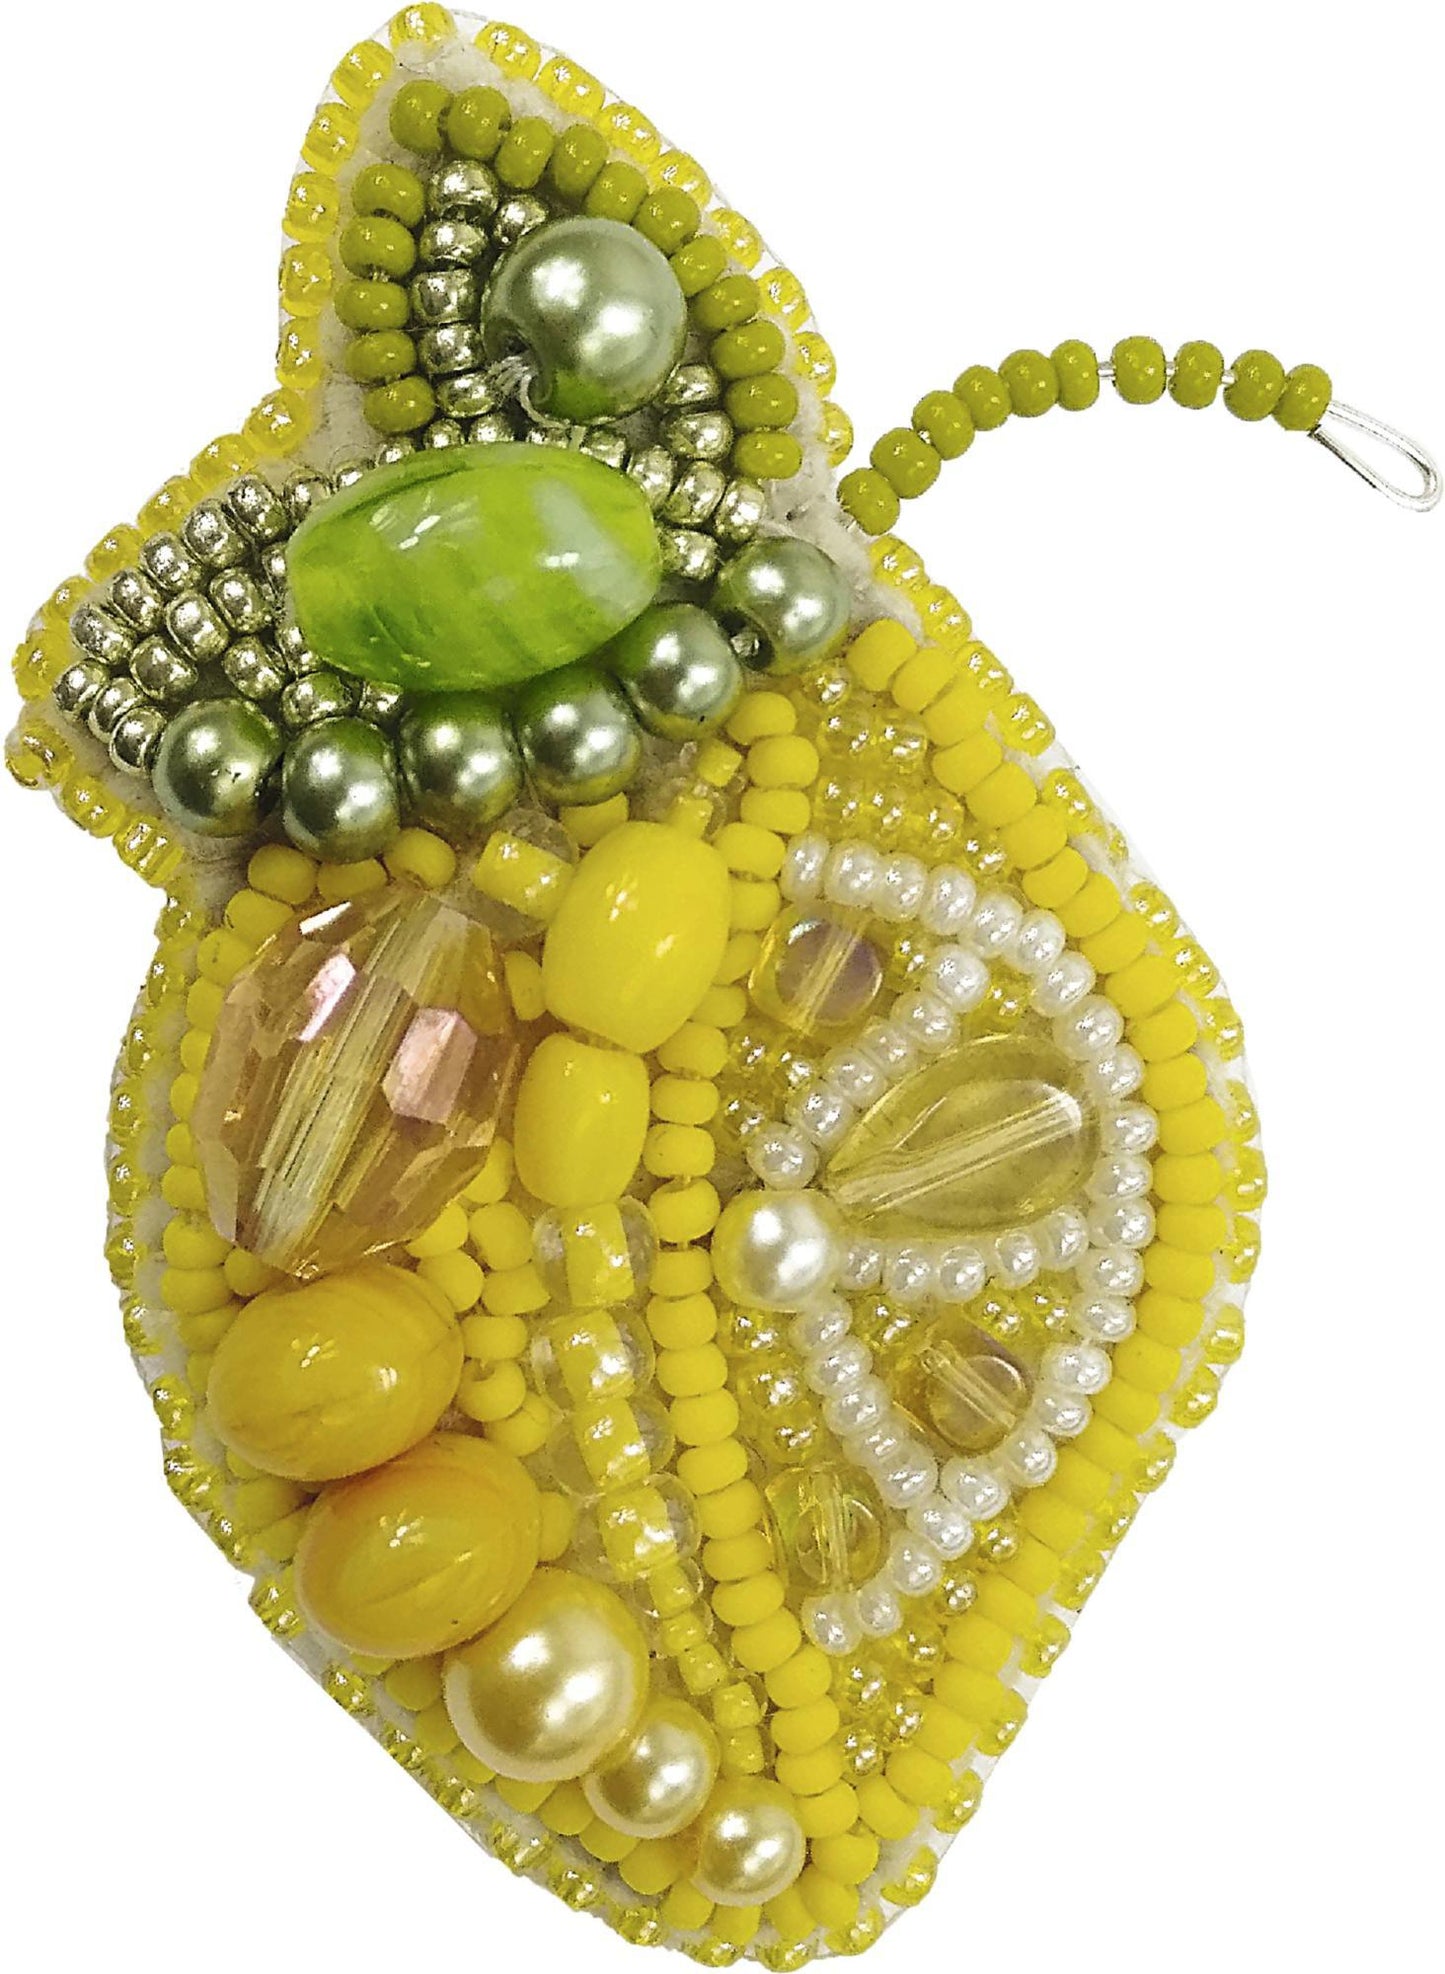 BP-240 Beadwork kit for creating broоch Crystal Art "Lemon" - Leo Hobby